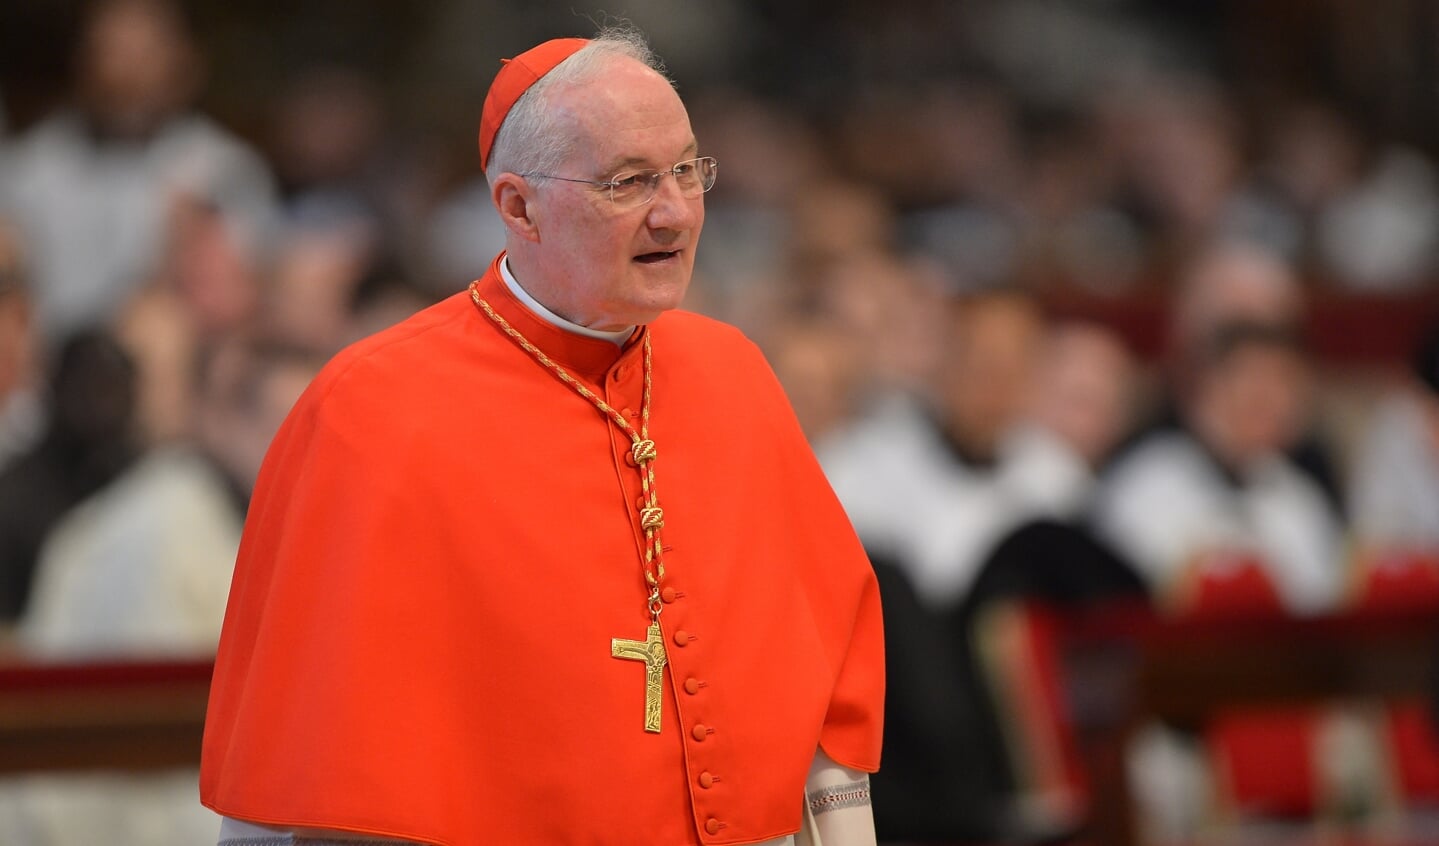 De Canadese kardinaal Marc Ouellet, voormalig aartsbisschop van de Franstalige stad Québec (Canada) en huidig prefect van het Vaticaanse Dicasterie voor de Bisschoppen.